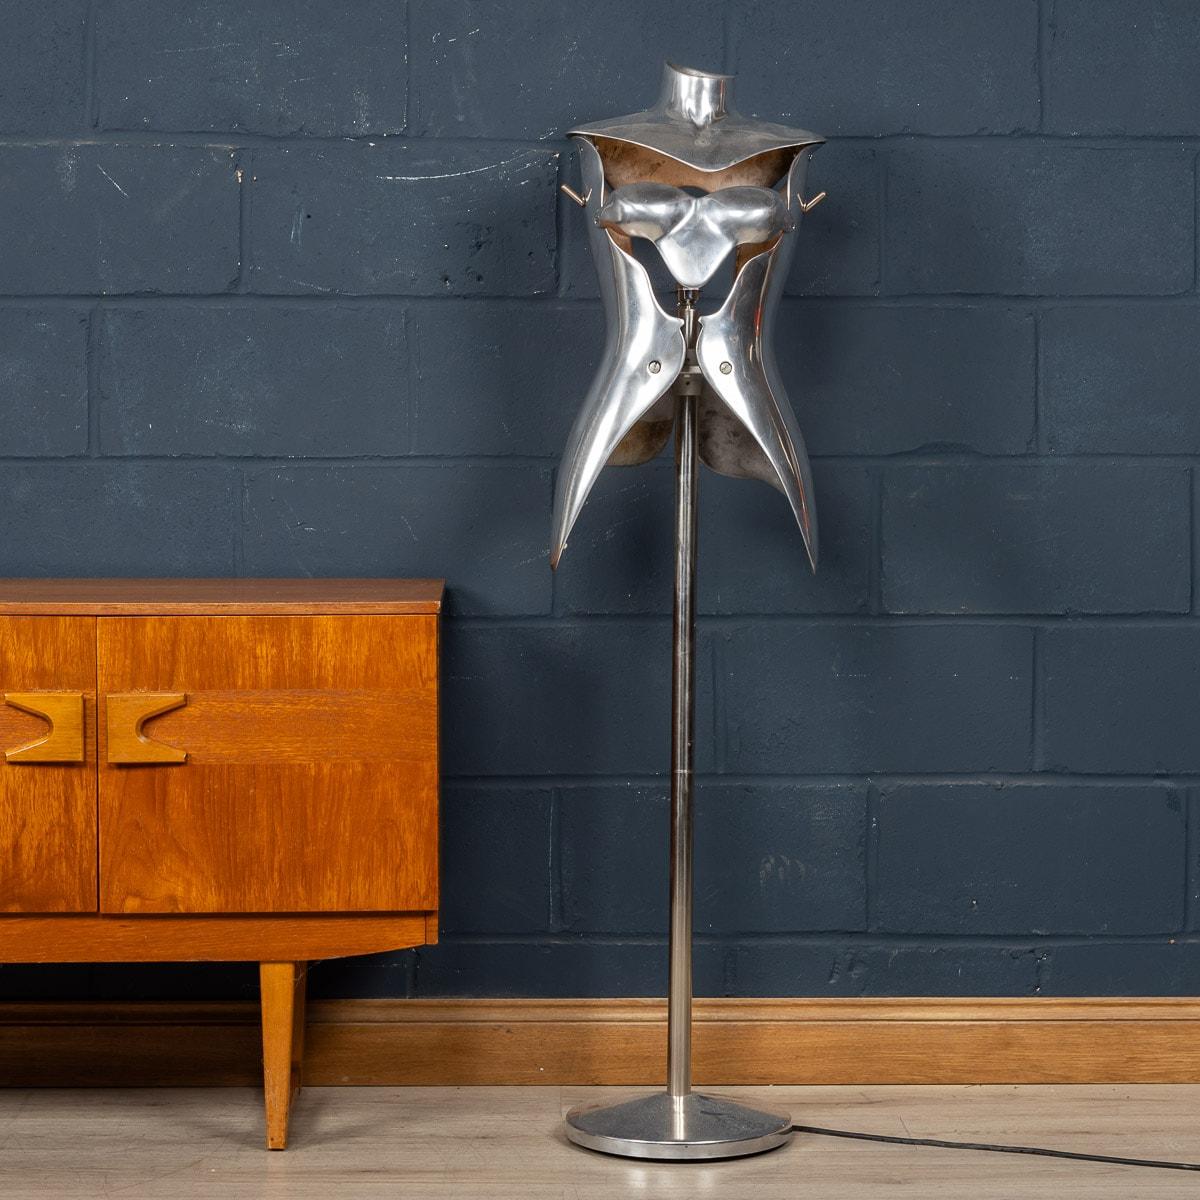 Une lampe mannequin élégante conçue par Nigel Coates, réalisée pour Jigsaw Clothing Company, Knightsbridge, Londres. Fabriqués en aluminium avec des torses sectionnels, ces mannequins comptent parmi les plus étonnants jamais réalisés. Ils ornaient